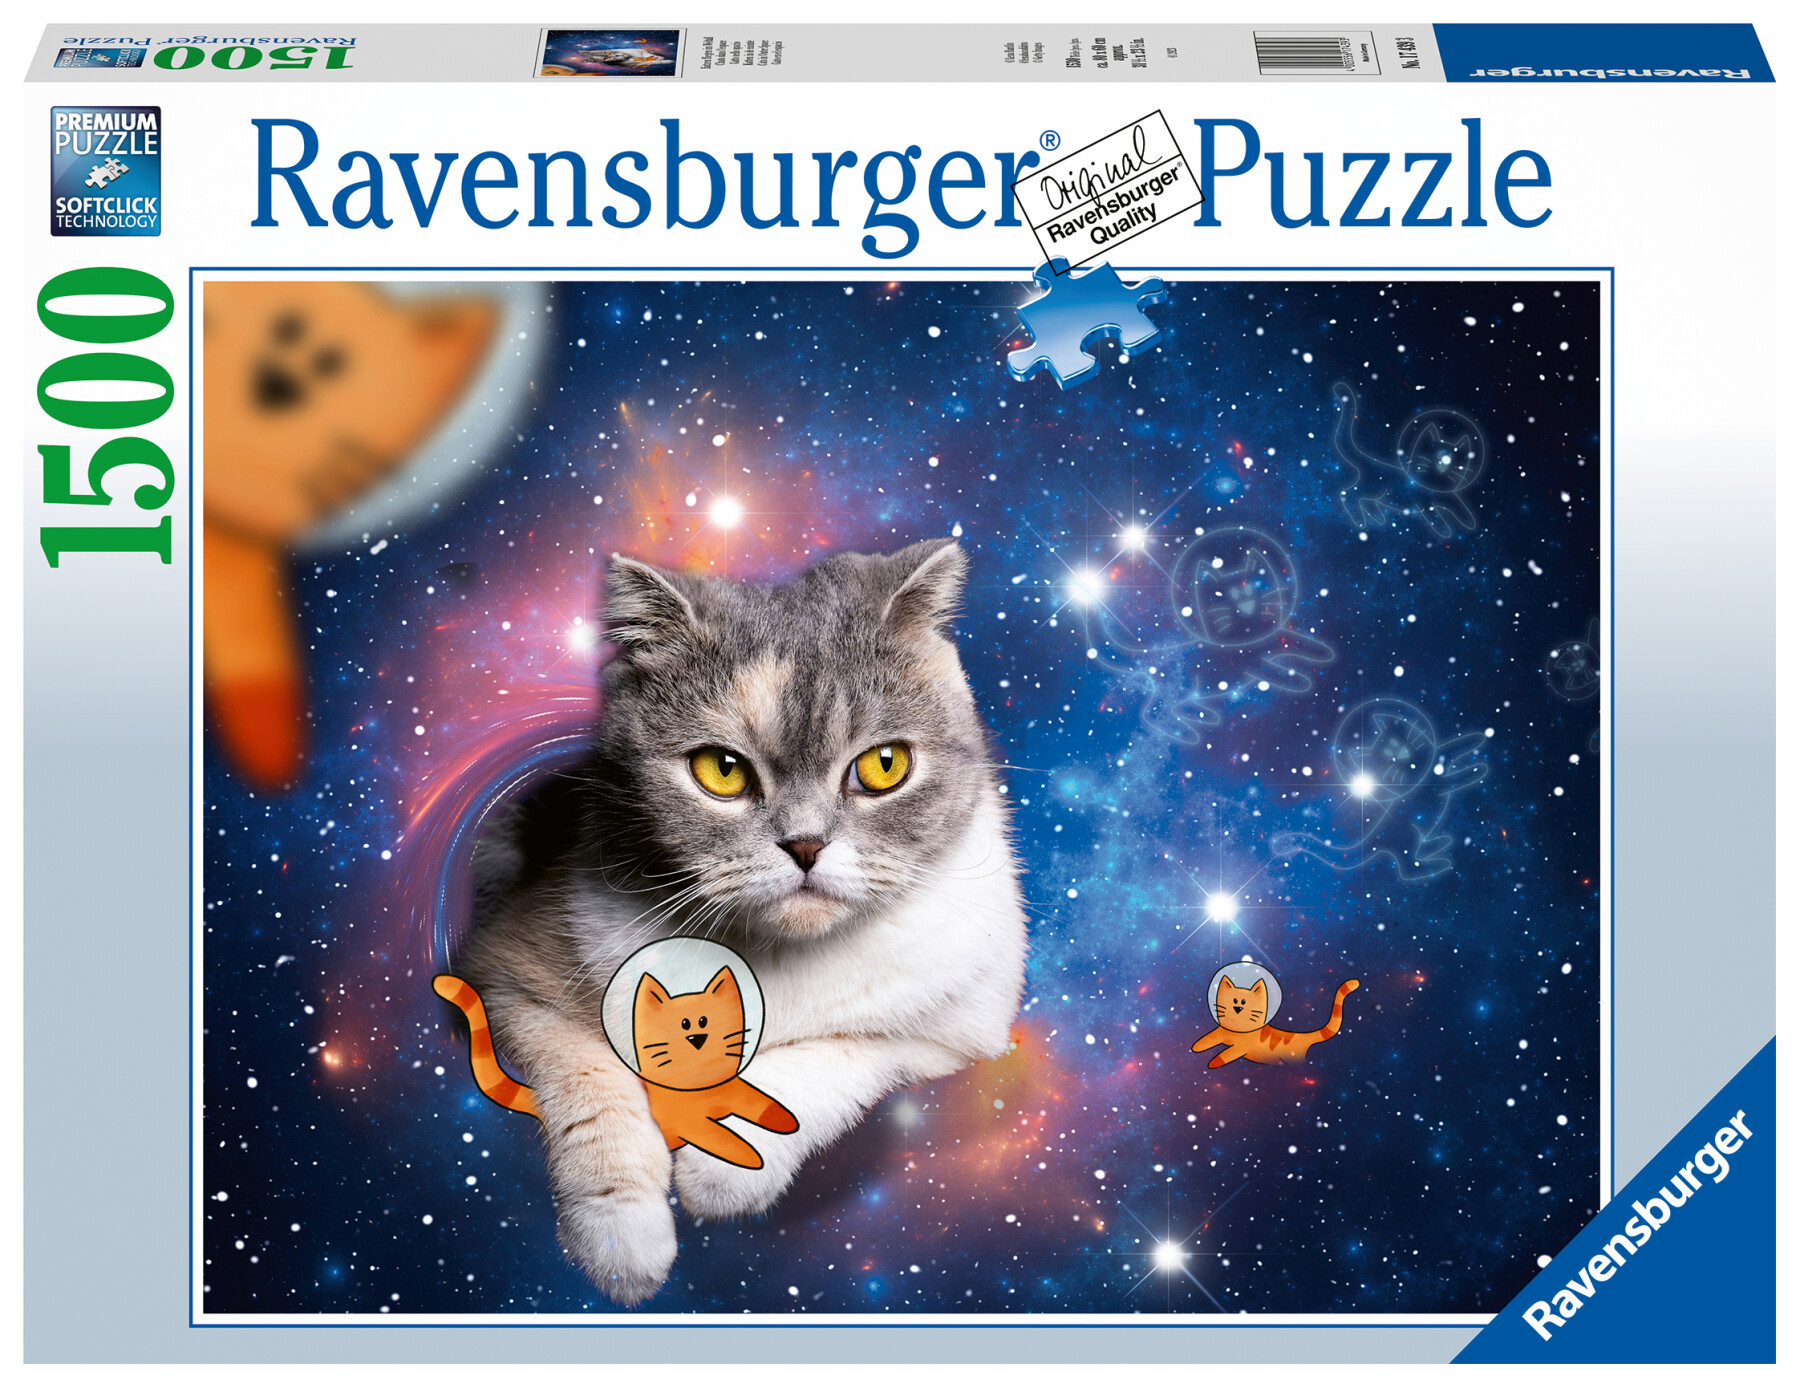 Ravensburger - puzzle gatto nello spazio, 1500 pezzi, puzzle adulti - RAVENSBURGER